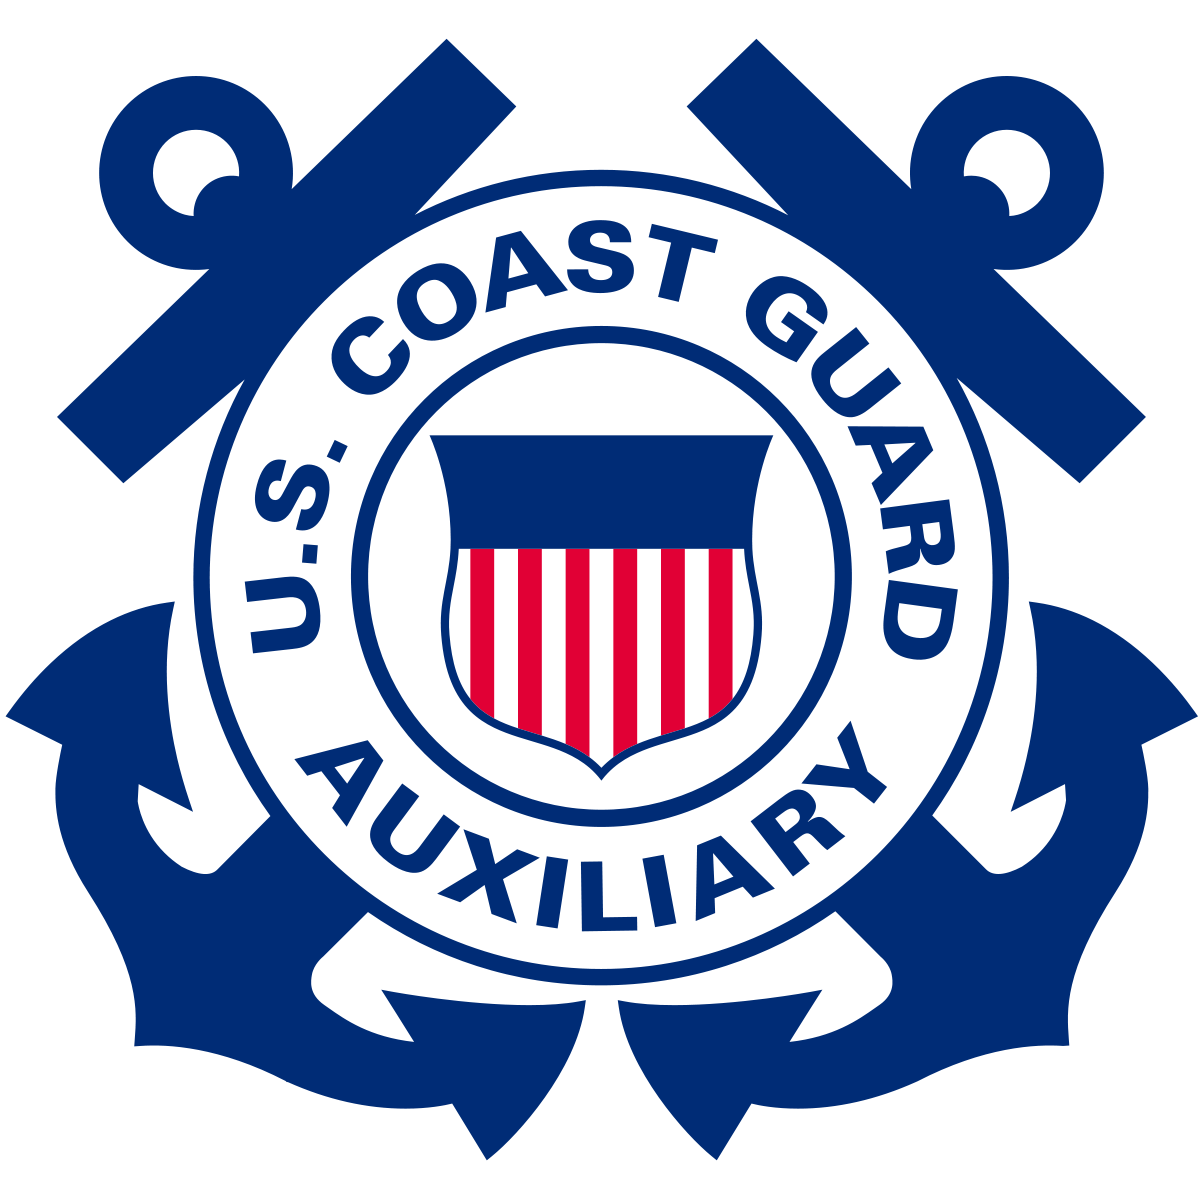 Coast Guard Auxiliary